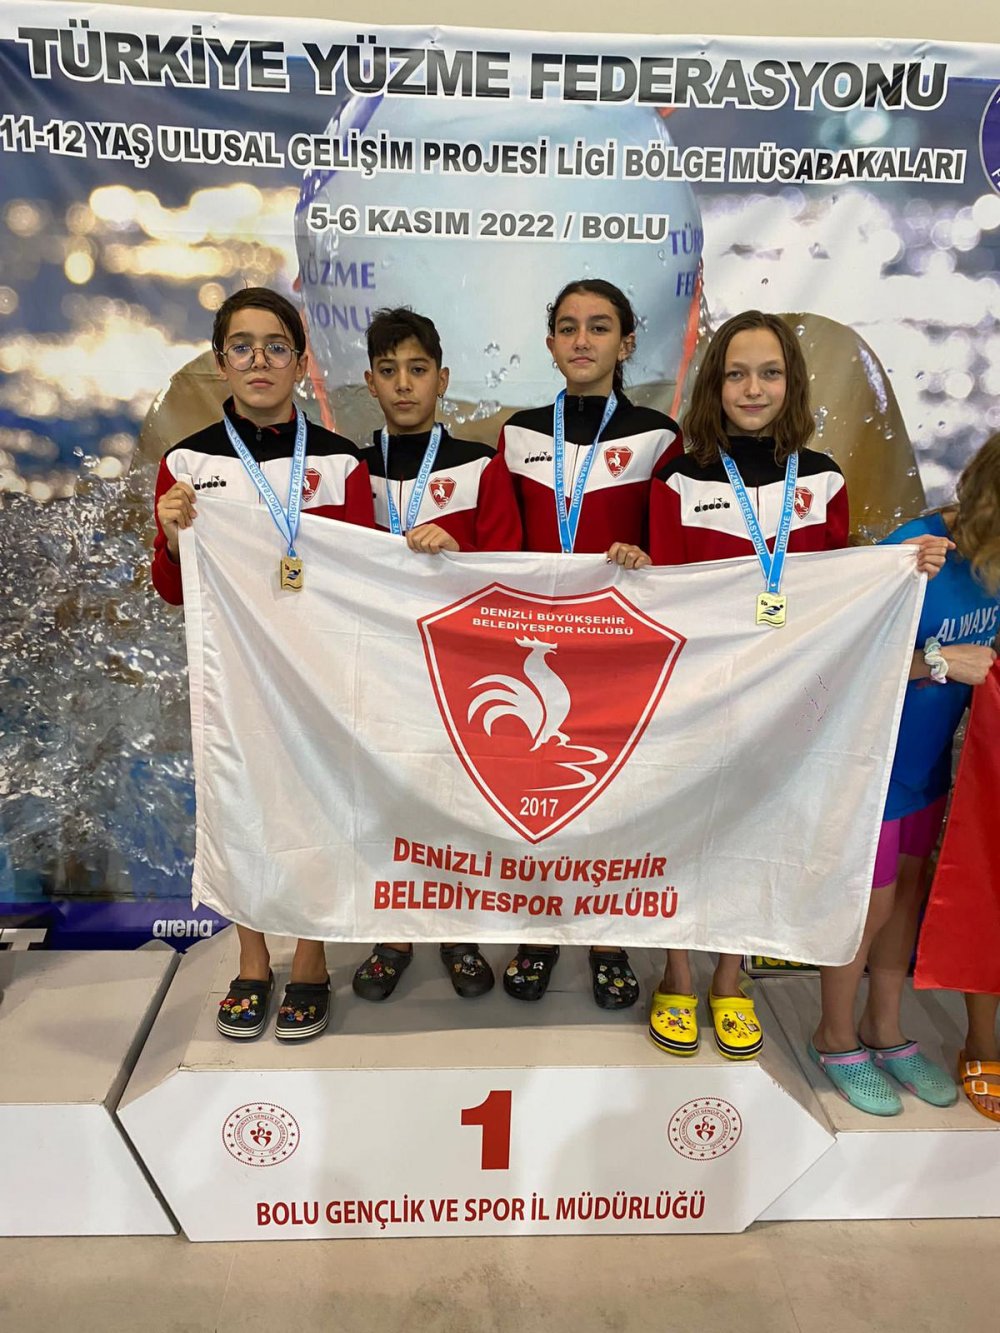 Denizli Büyükşehir Belediyespor Yüzme Takımı, Bolu’da düzenlenen 11-12 Yaş Ulusal Gelişim Projesi Ligi Bölge Şampiyonasına damgasını vurdu. Bayrak Müsabakalarında 12 ayrı müsabakada 9 bölge şampiyonluğu ile 3 bölge üçüncülüğü elde eden küçük sporcular başarıları ile göz kamaştırdı.